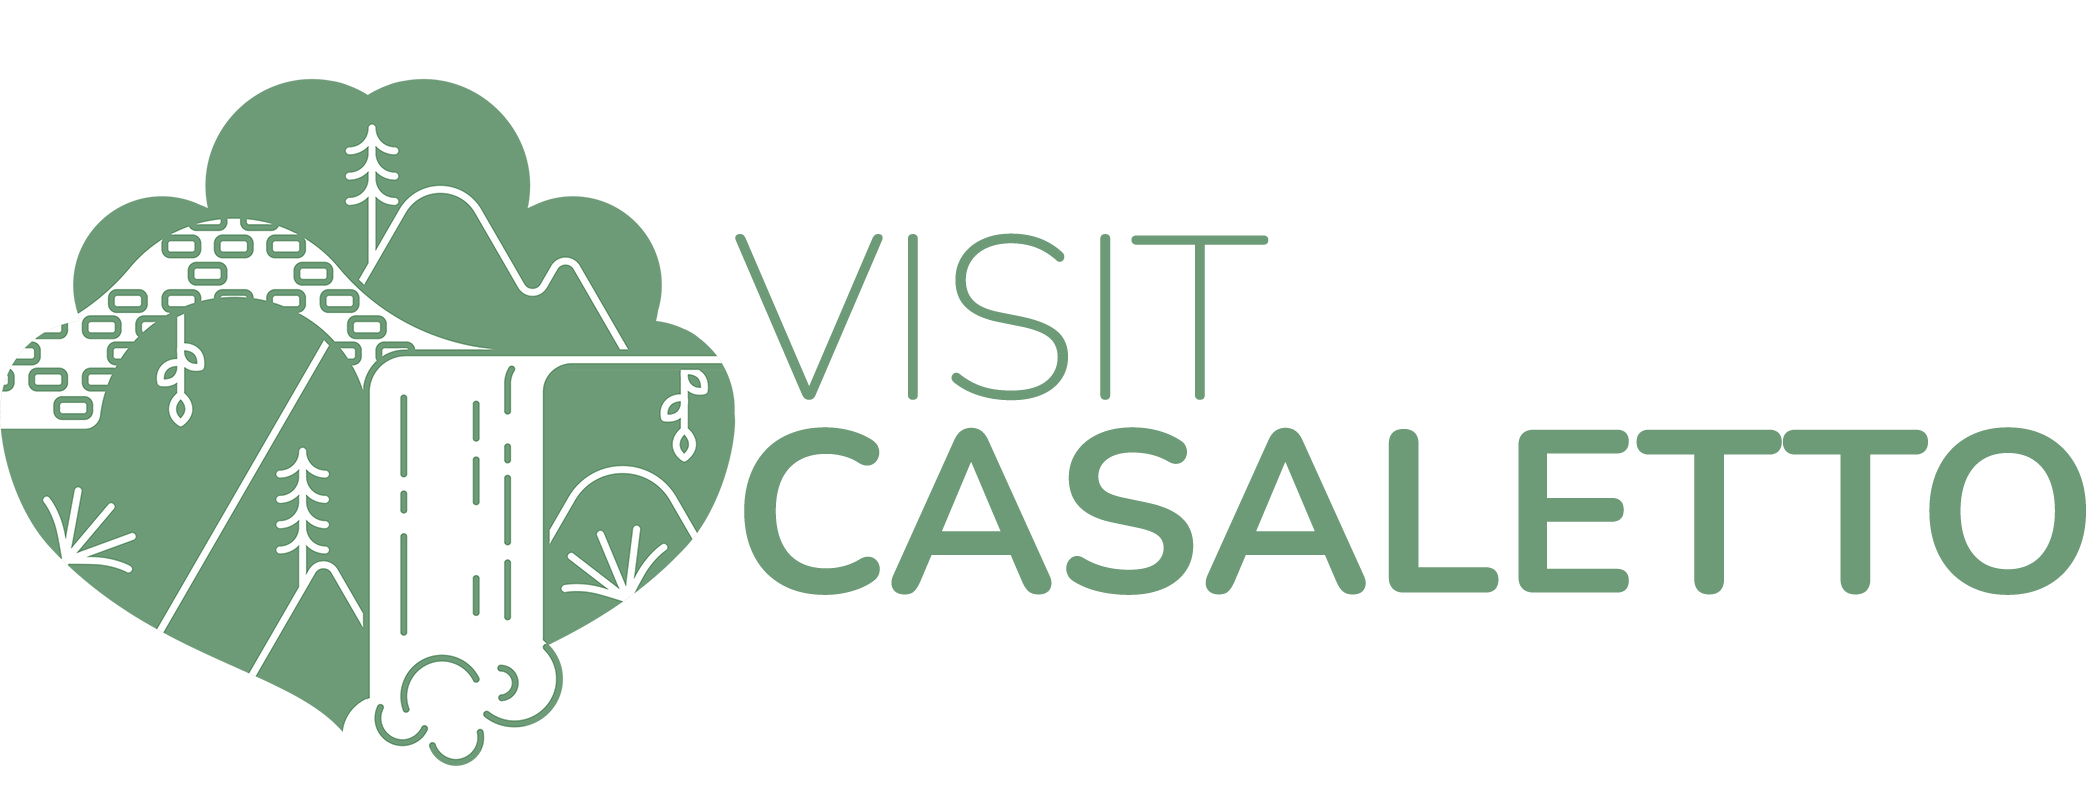 Visit Casaletto - Il sito ufficiale turistico di Casaletto Spartano